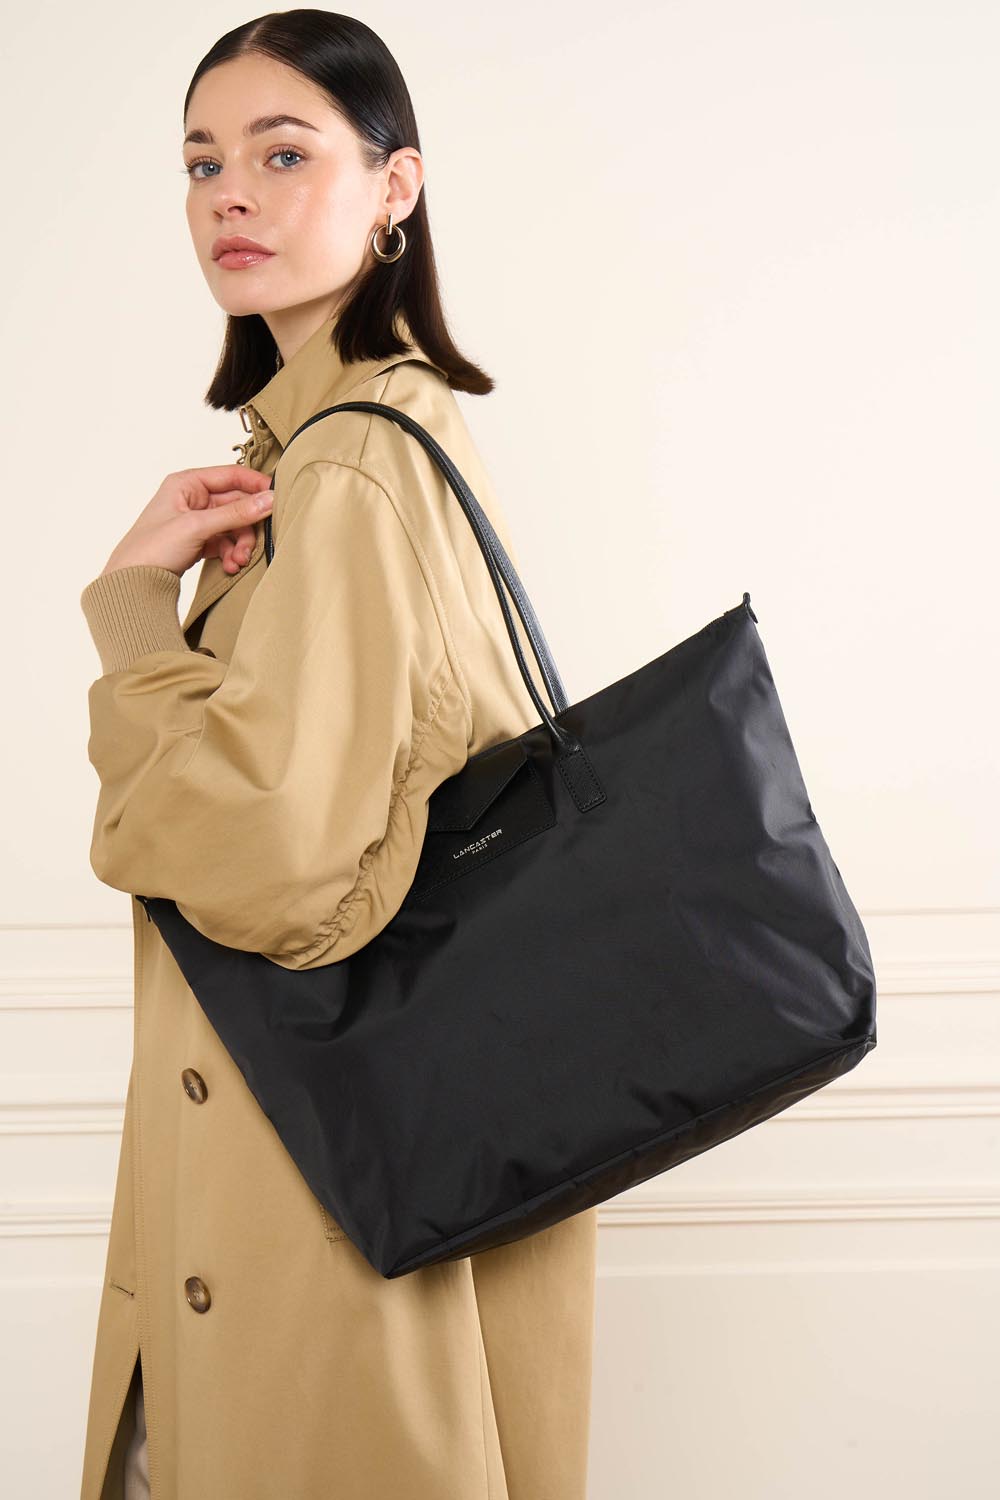 large tote bag - smart kba #couleur_noir